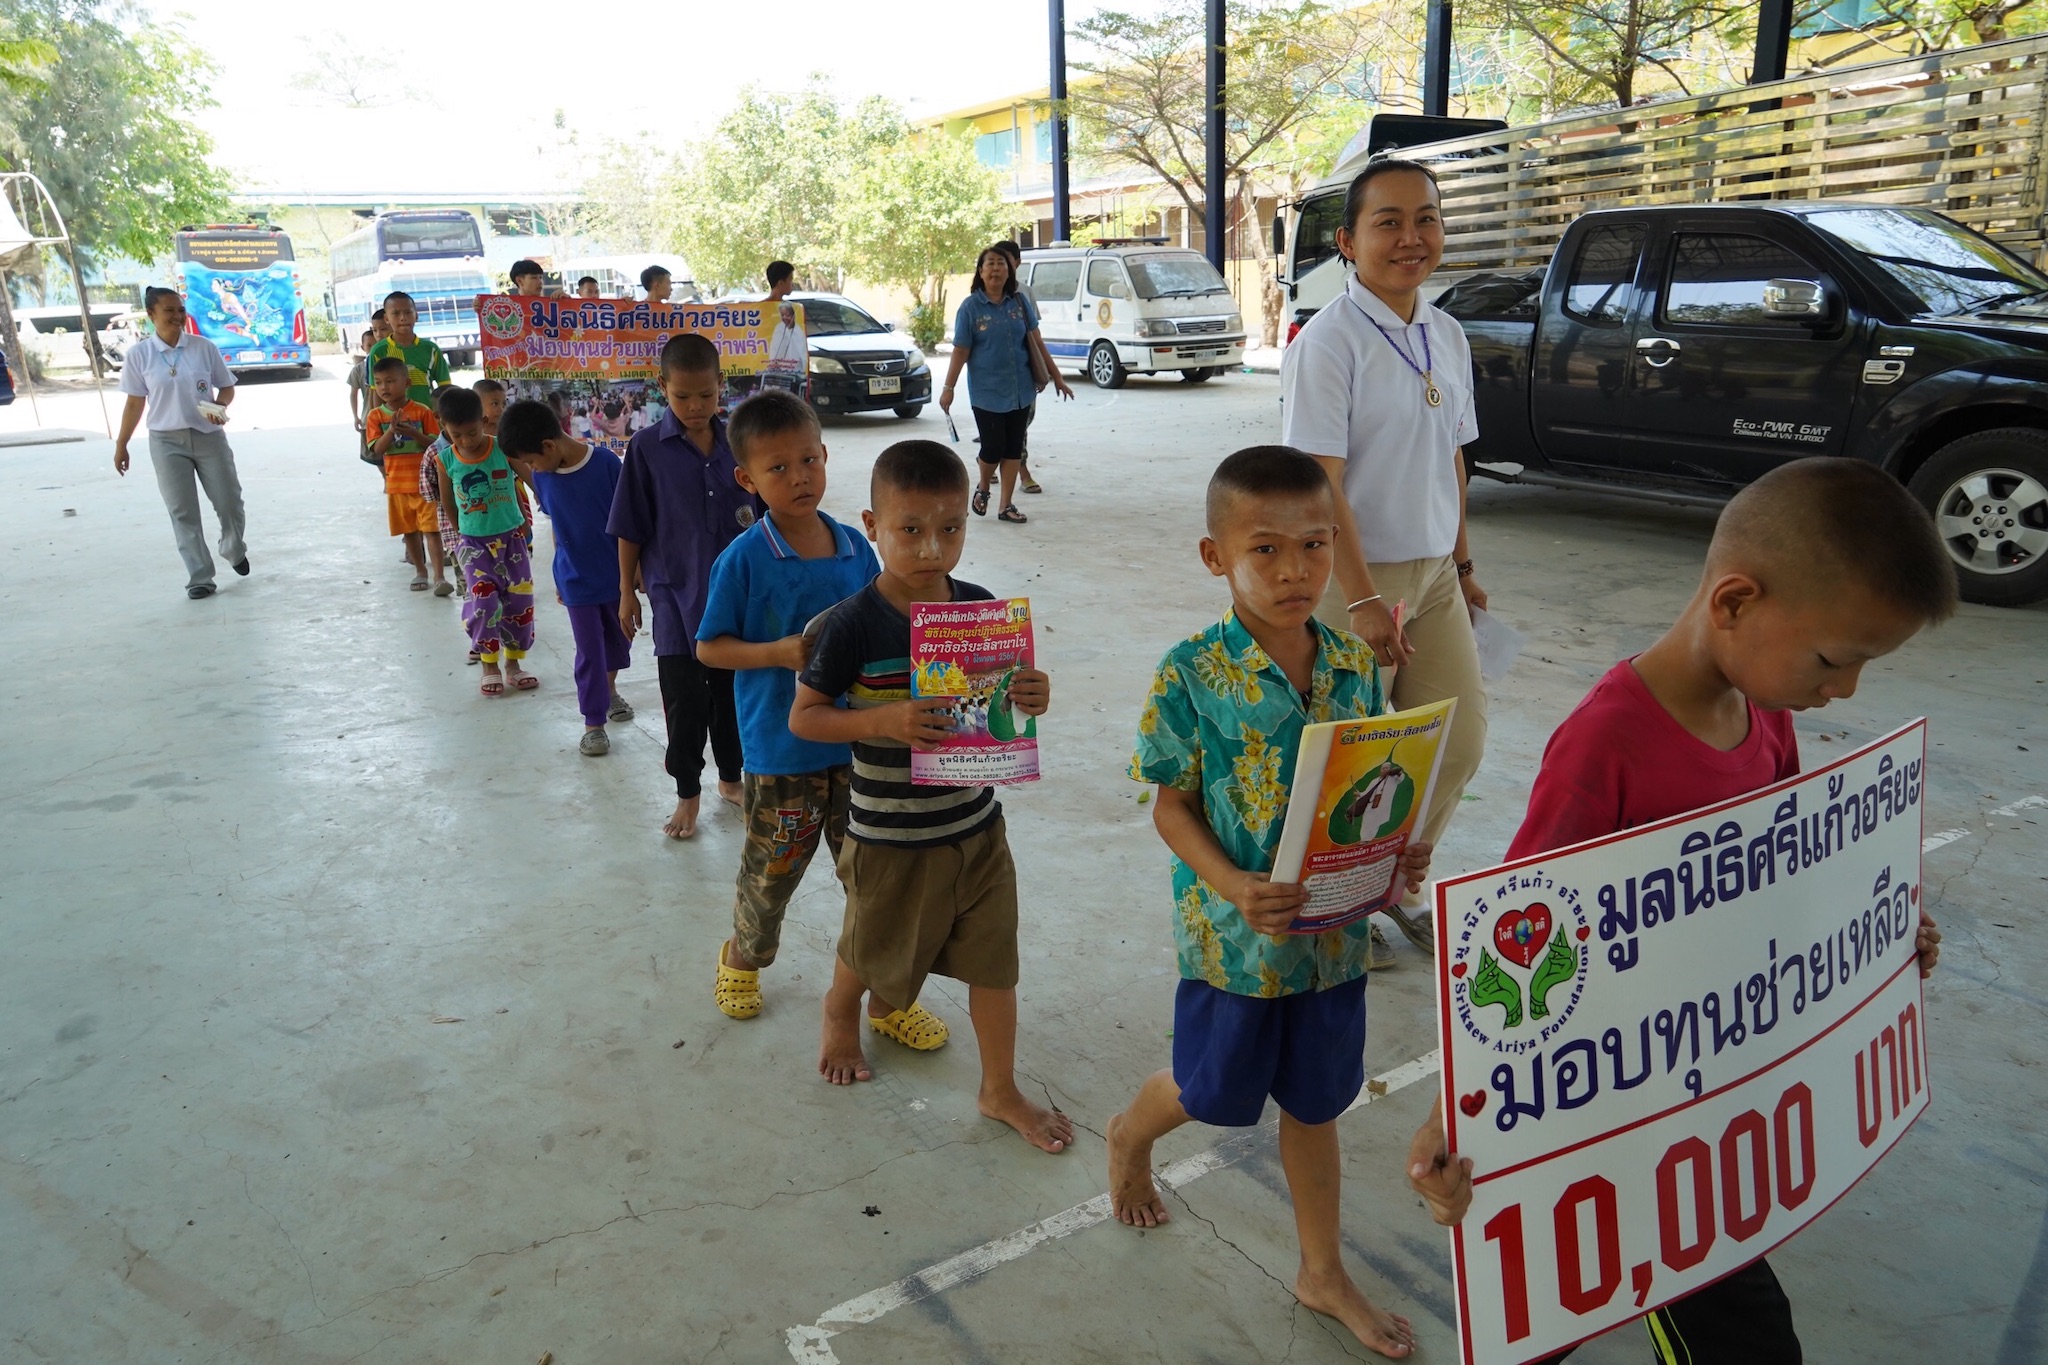 โครงการมอบทุนช่วยเหลือเด็ก  วันที่ 30 มีนาคม 2562 ณ  สถานสงเคราะห์เด็กกำพร้าวัดสระแก้ว ต.บางเสด็จ อ.ป่าโมก จ.อ่างทอง